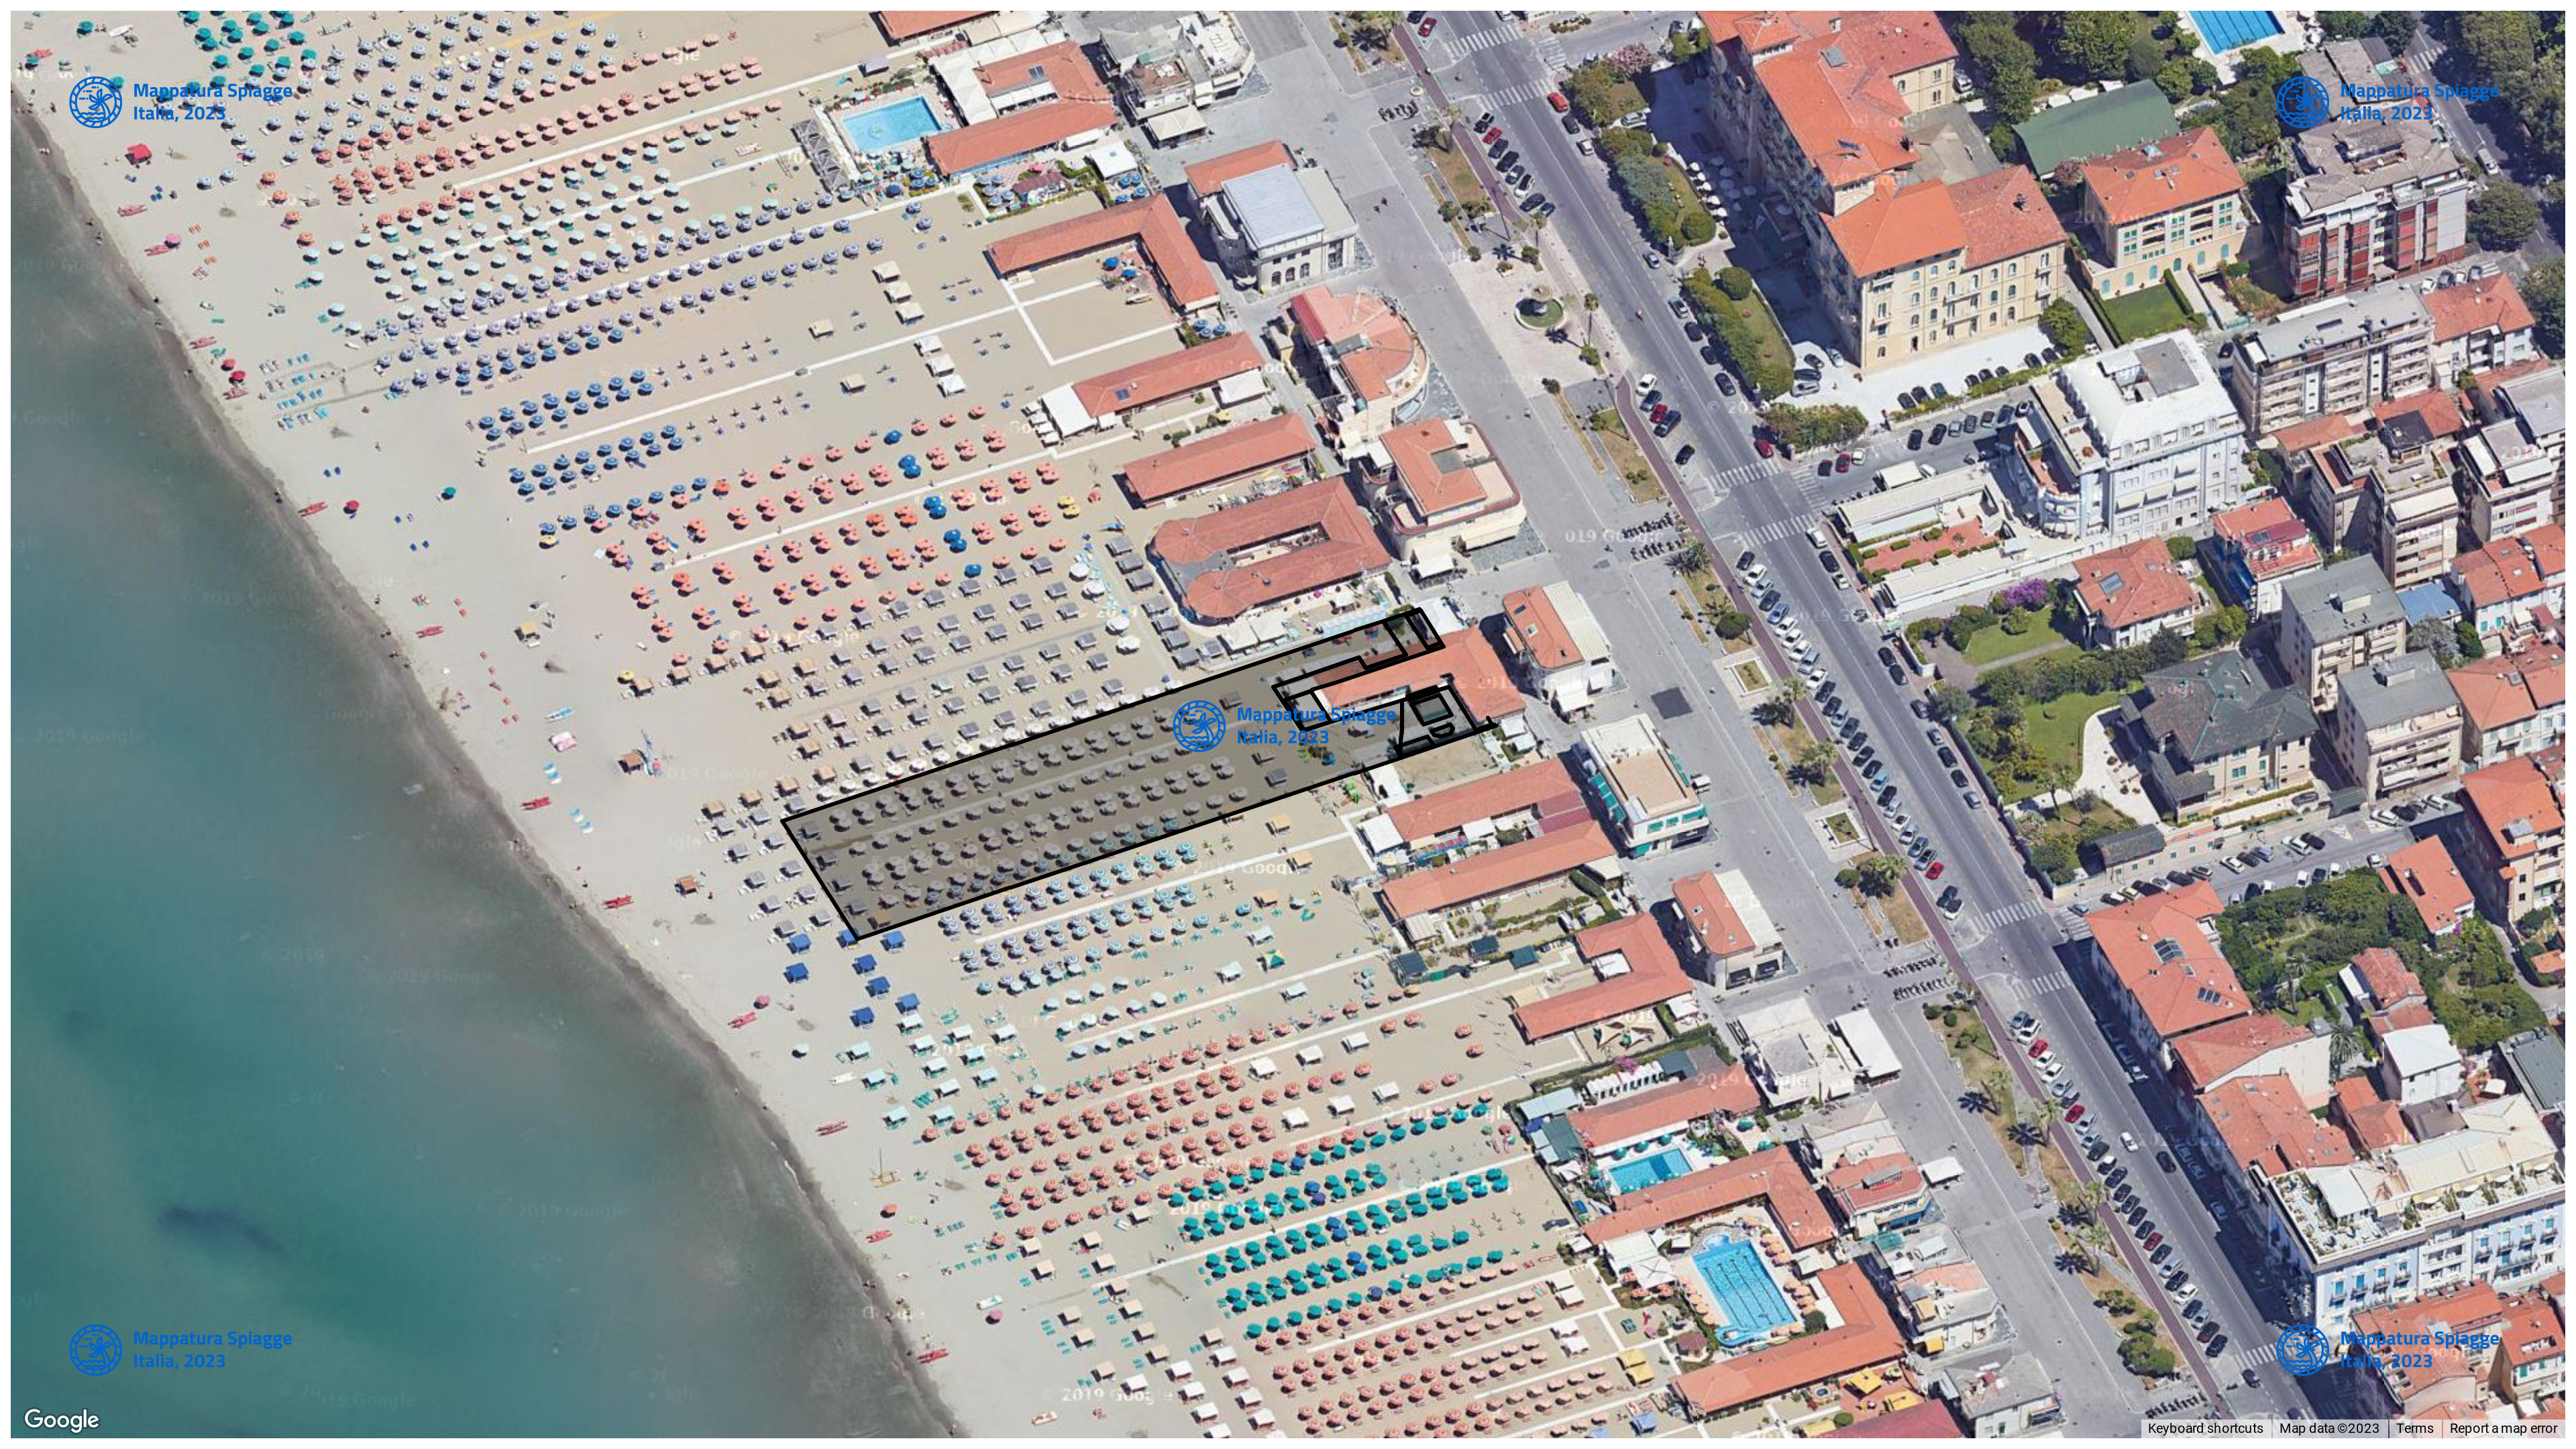 Foto Satellitare - Google Maps - Comune Viareggio, Concessione: N. 61 / 2005 del 21-09-2023